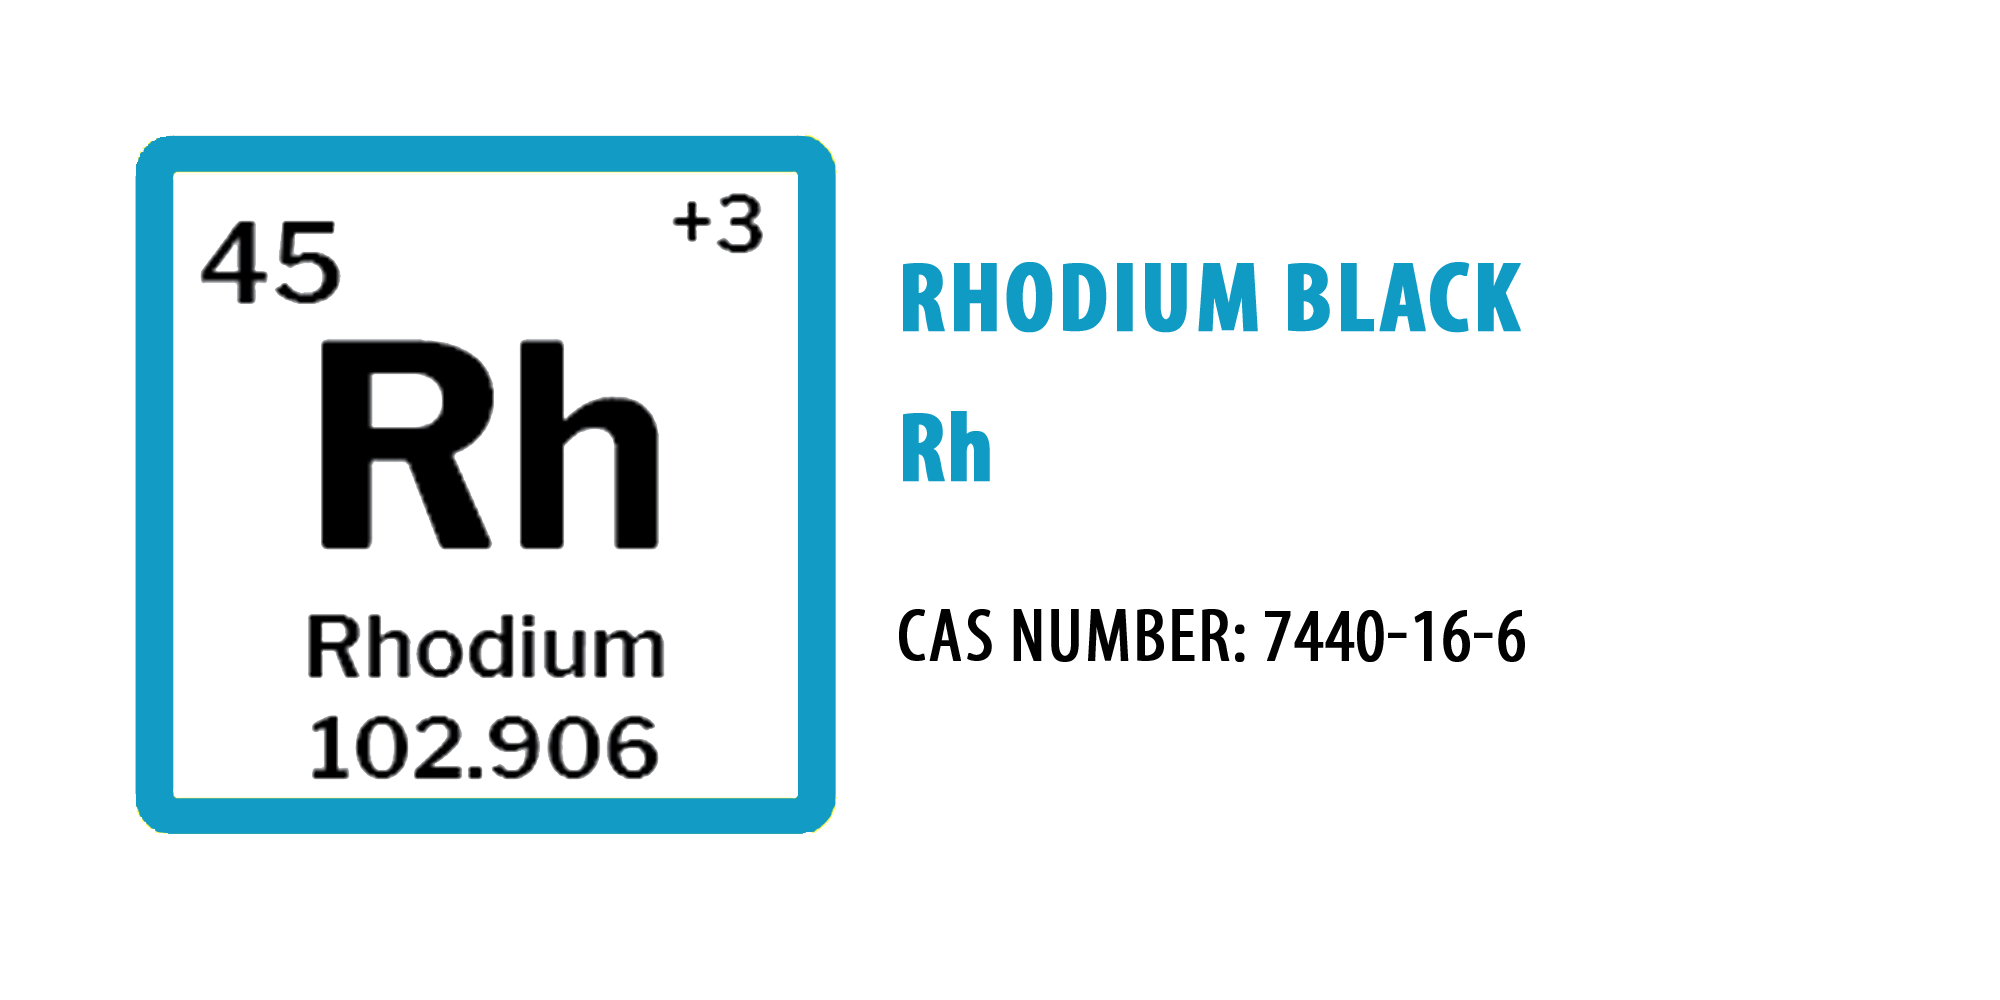 Rhodium black